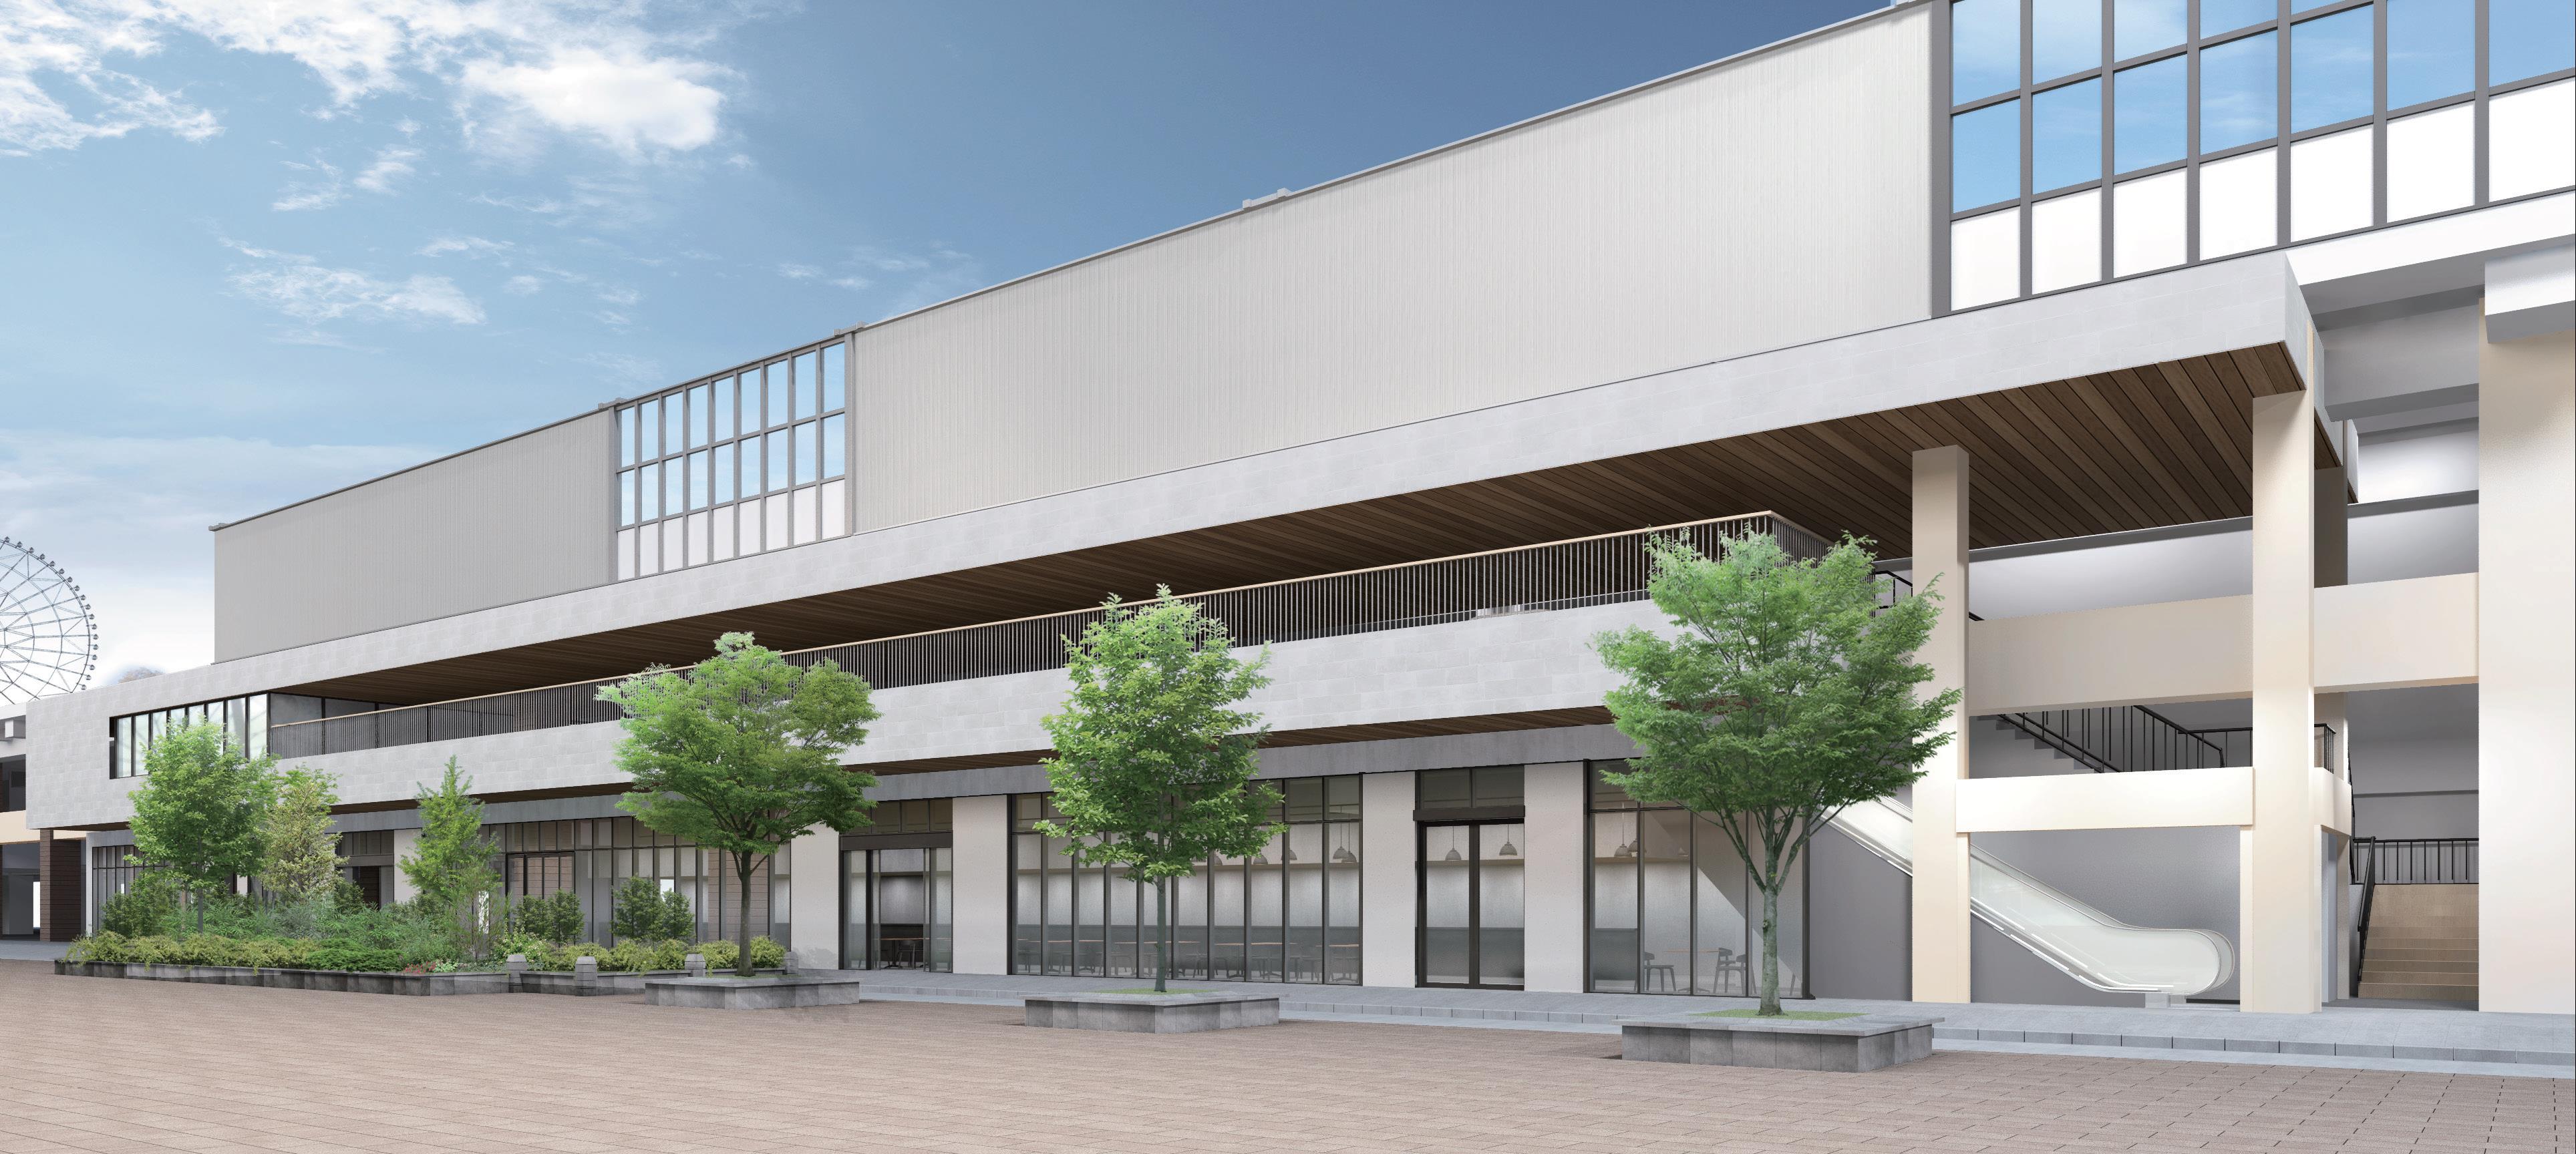 21年1月30日 土 葛西臨海公園駅高架下に新しいコンセプト型施設が誕生します 株式会社ジェイアール東日本都市開発のプレスリリース